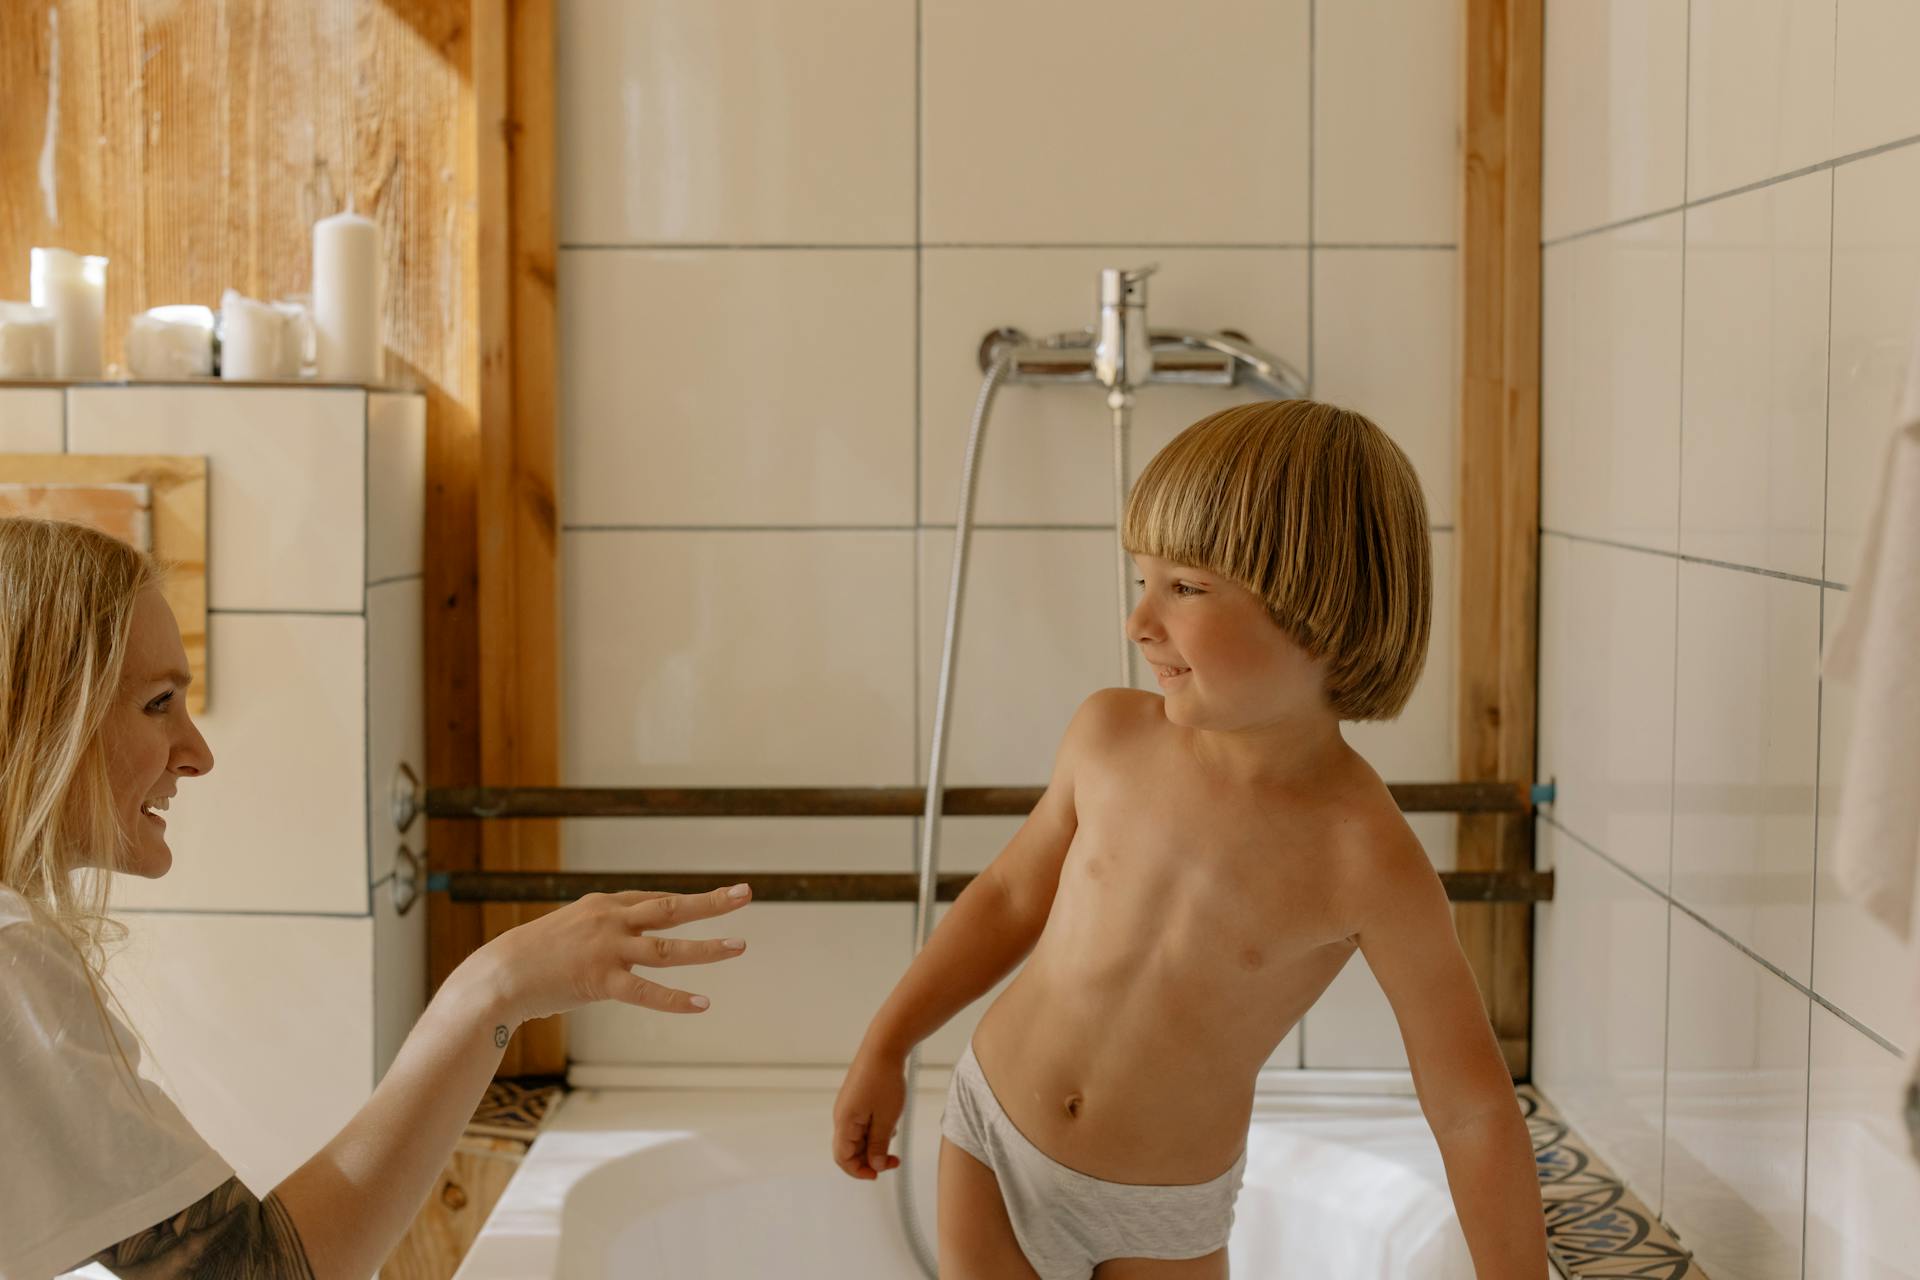 Une maman avec son fils dans la salle de bain | Source : Pexels